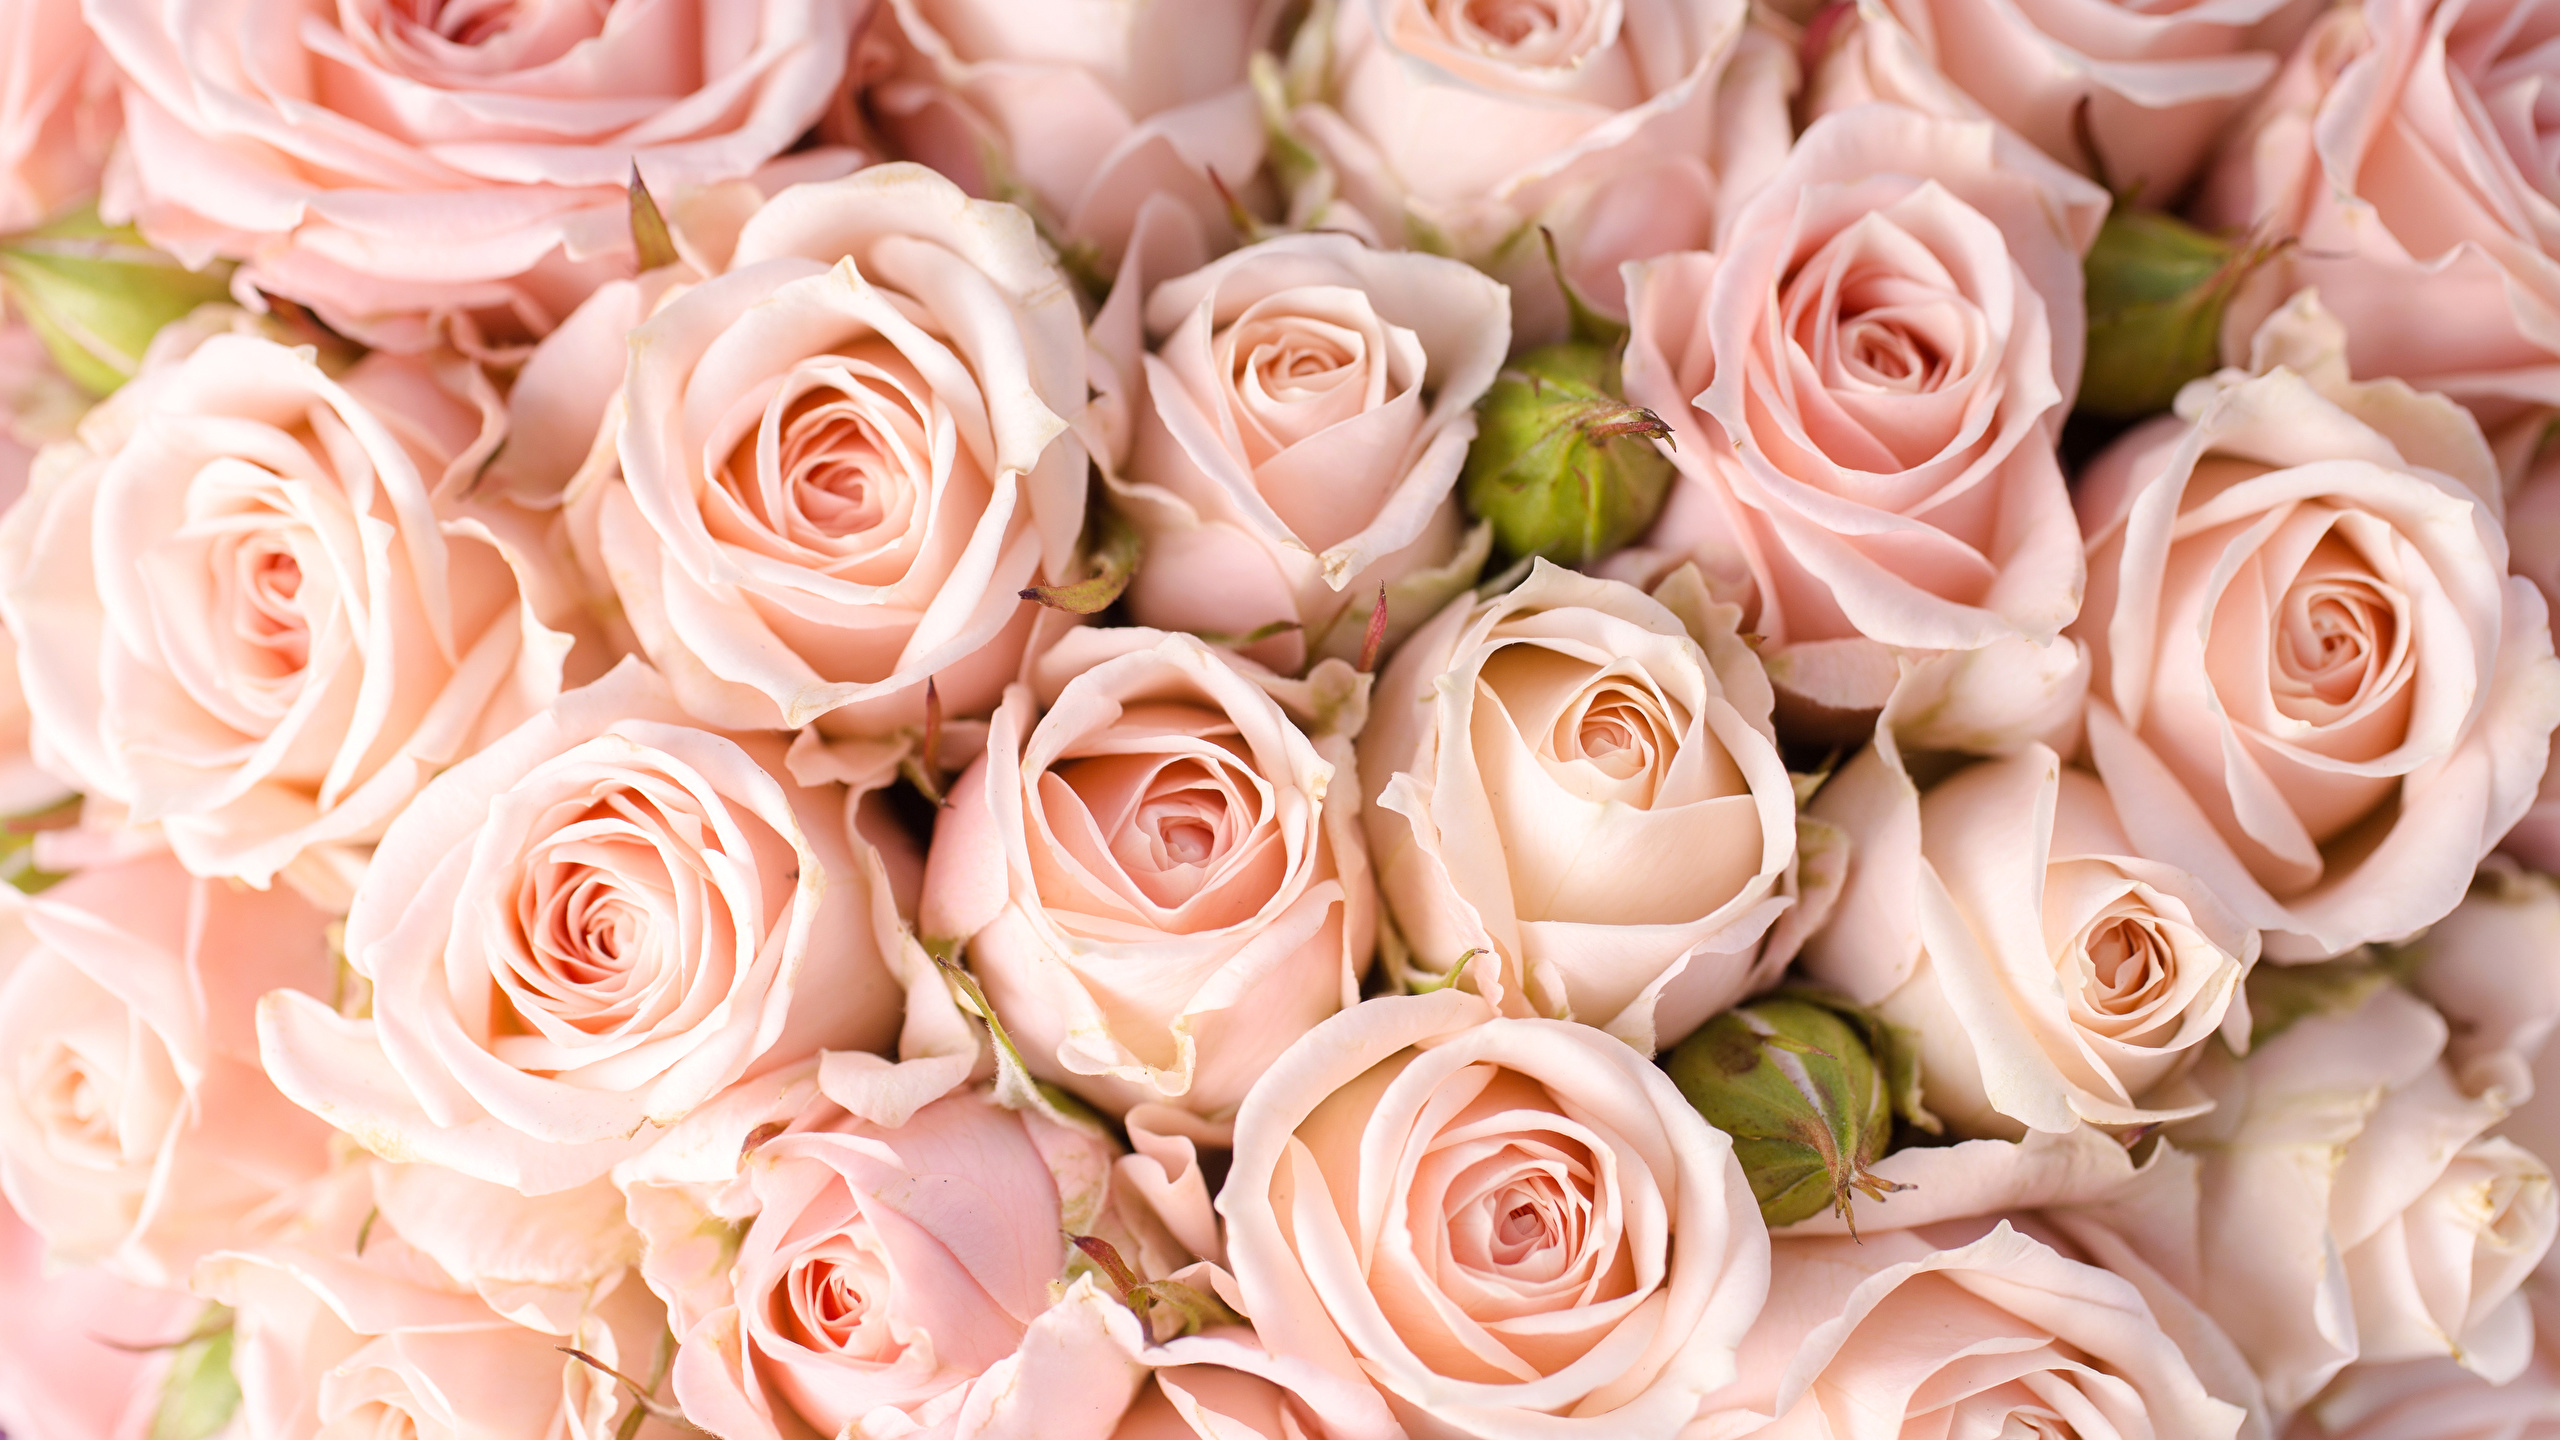 Fonds d'ecran 2560x1440 Roses En gros plan Rose couleur Fleurs